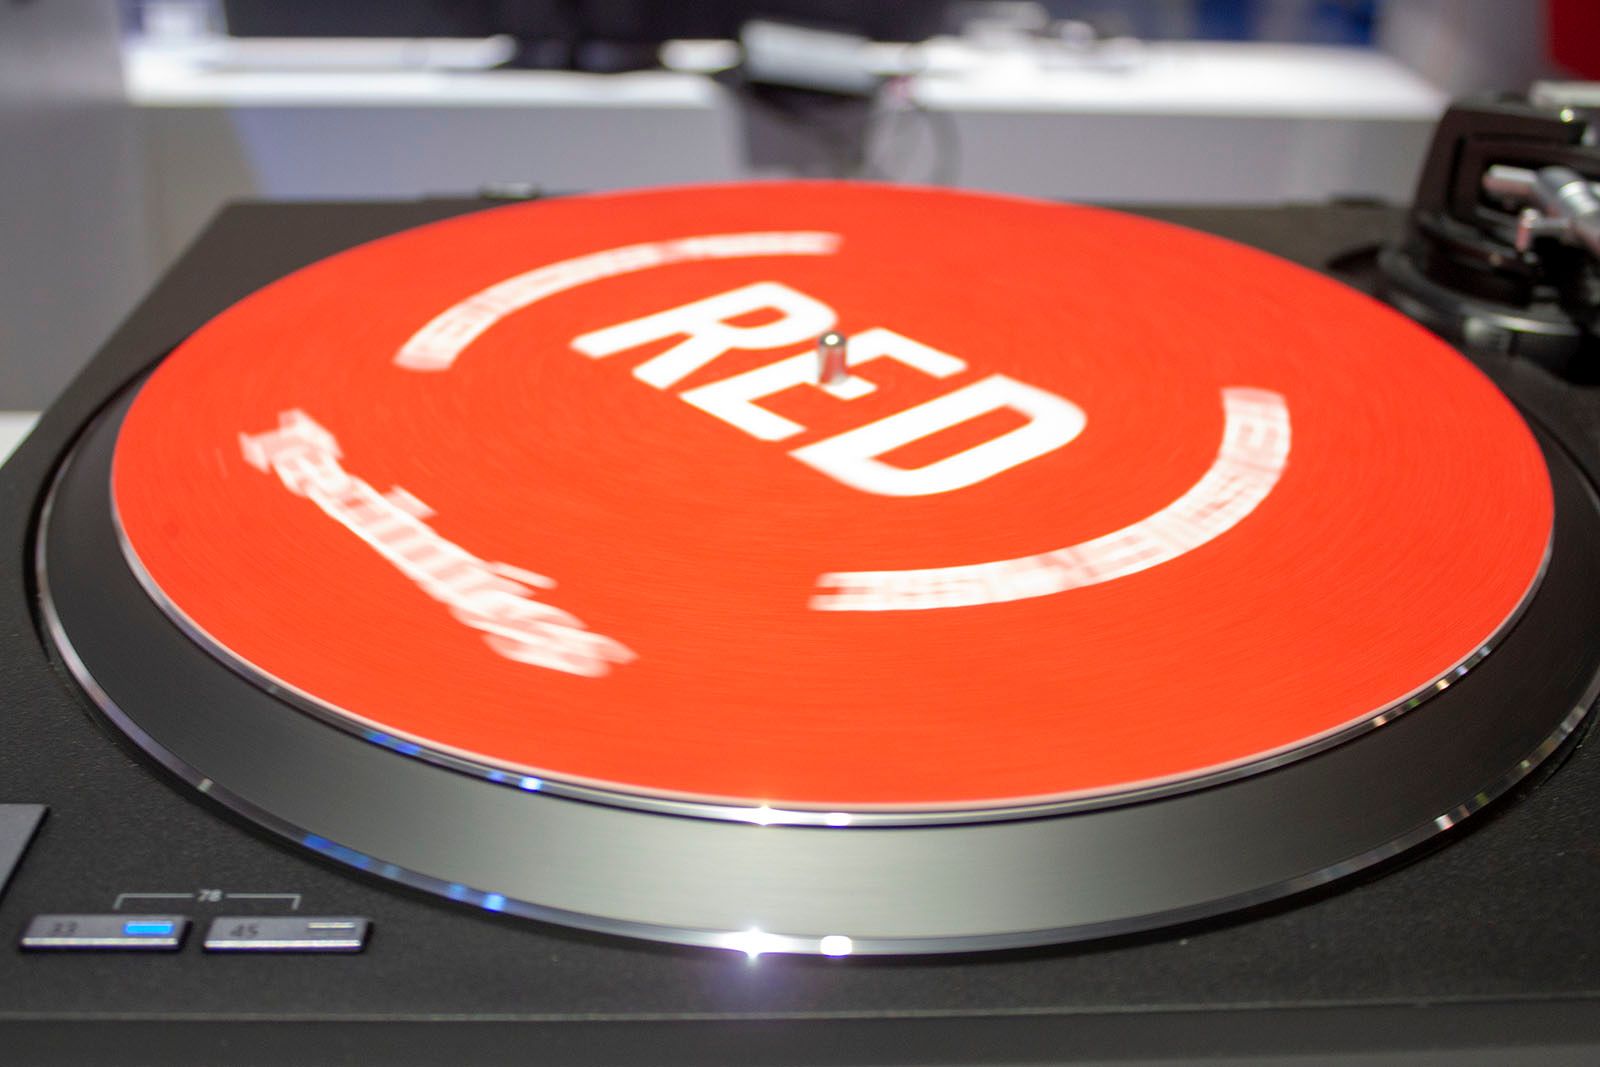 Hay un giradiscos Technics SL-100 de color rojo y es precioso.